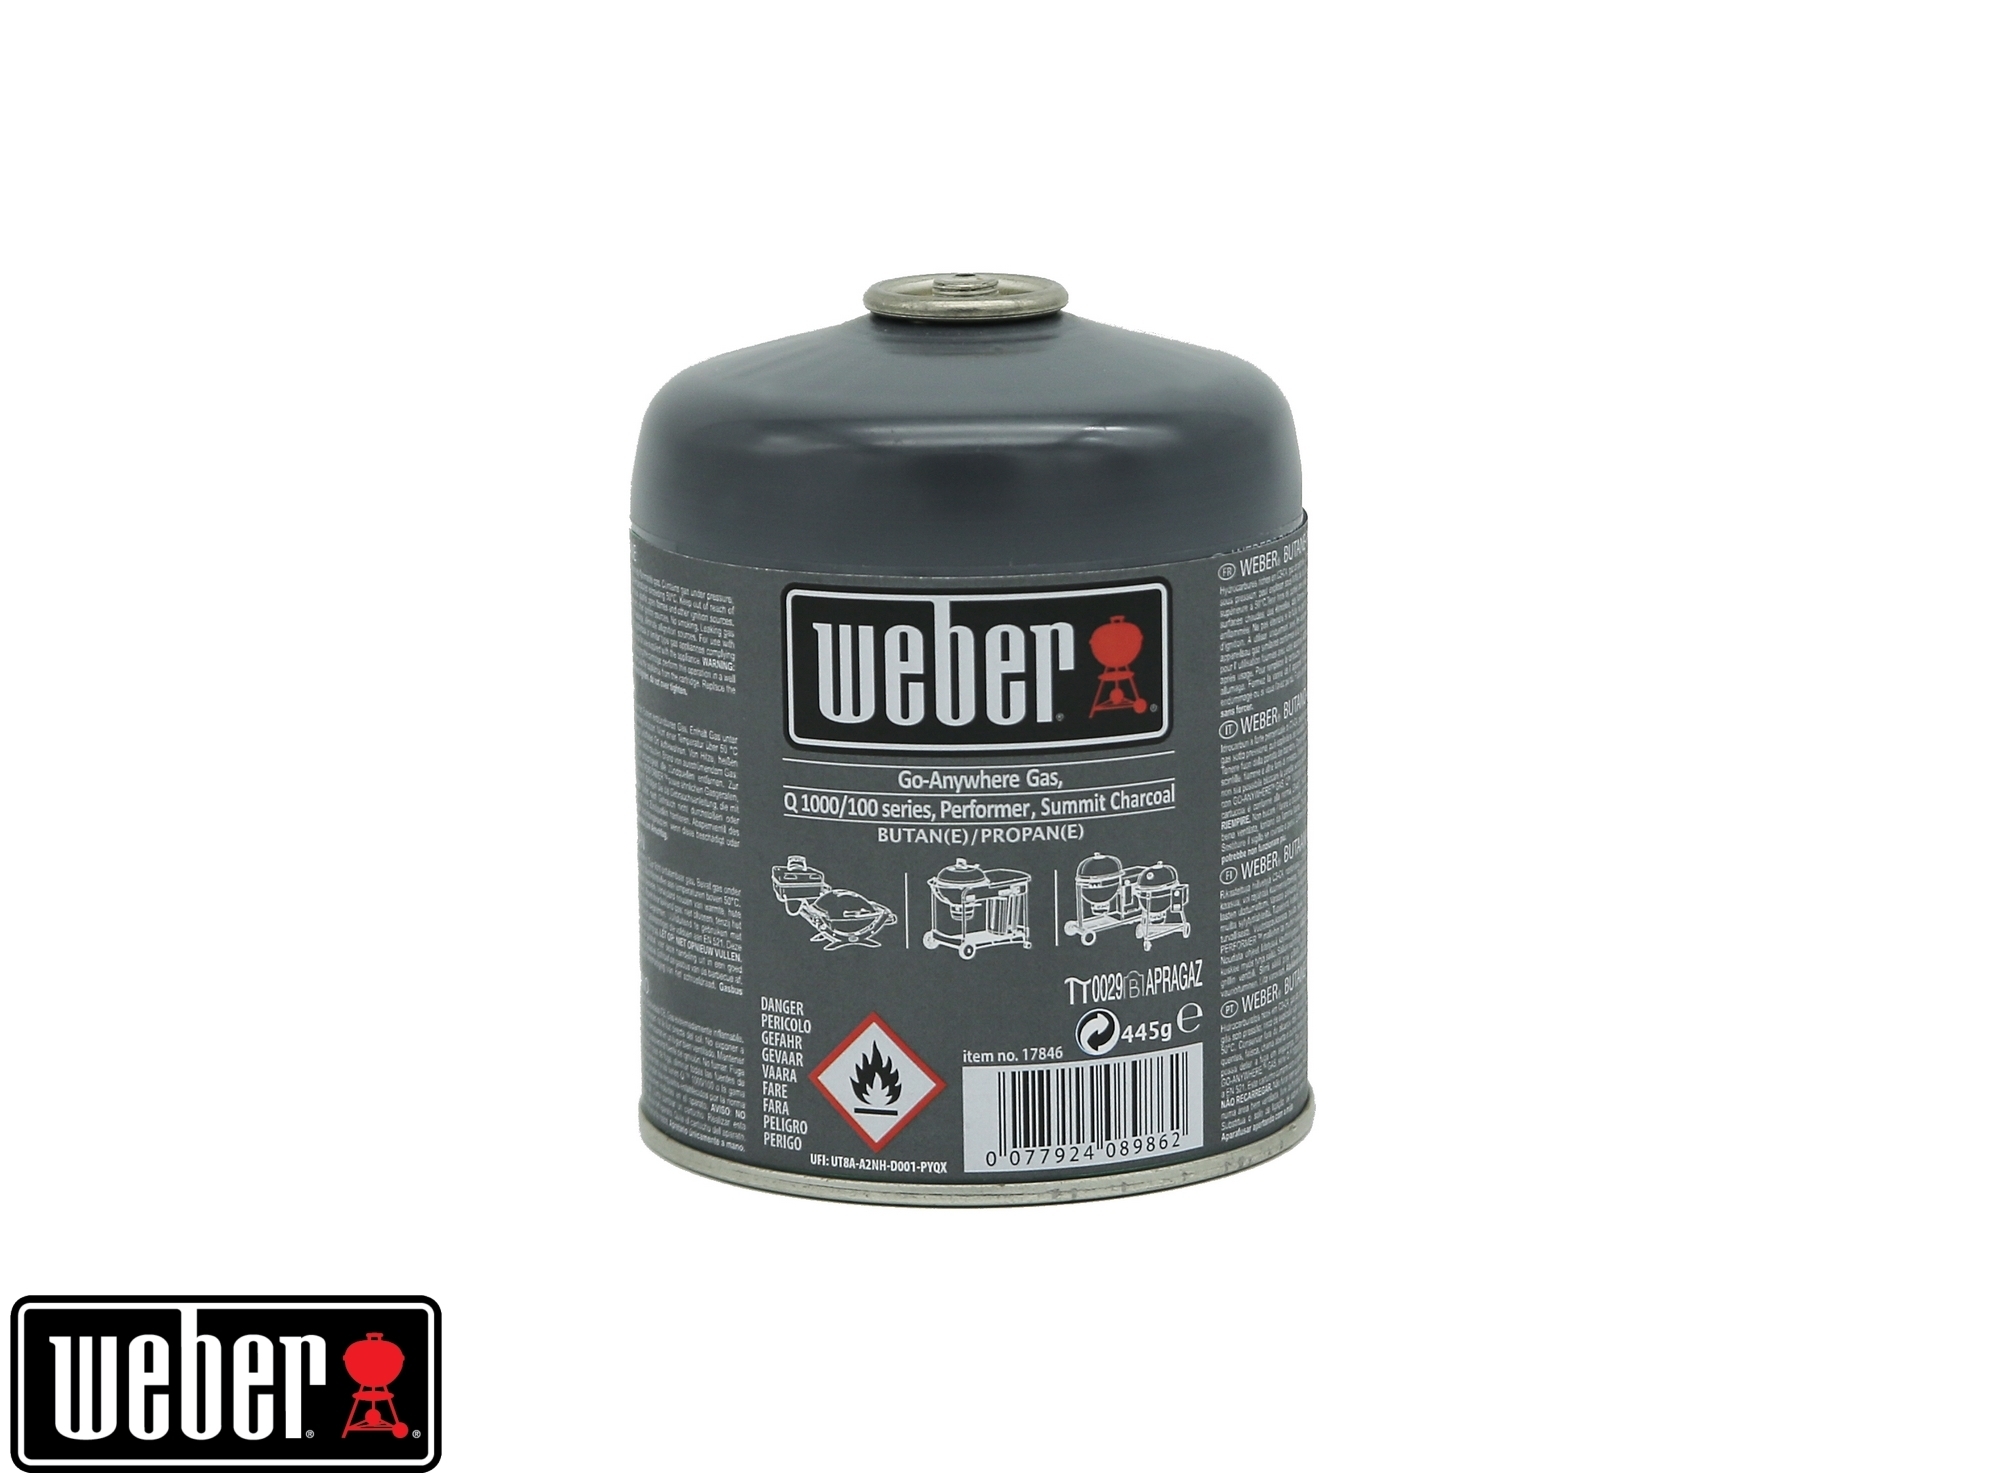 Weber Gas-Kartusche Vorteils 10er set 